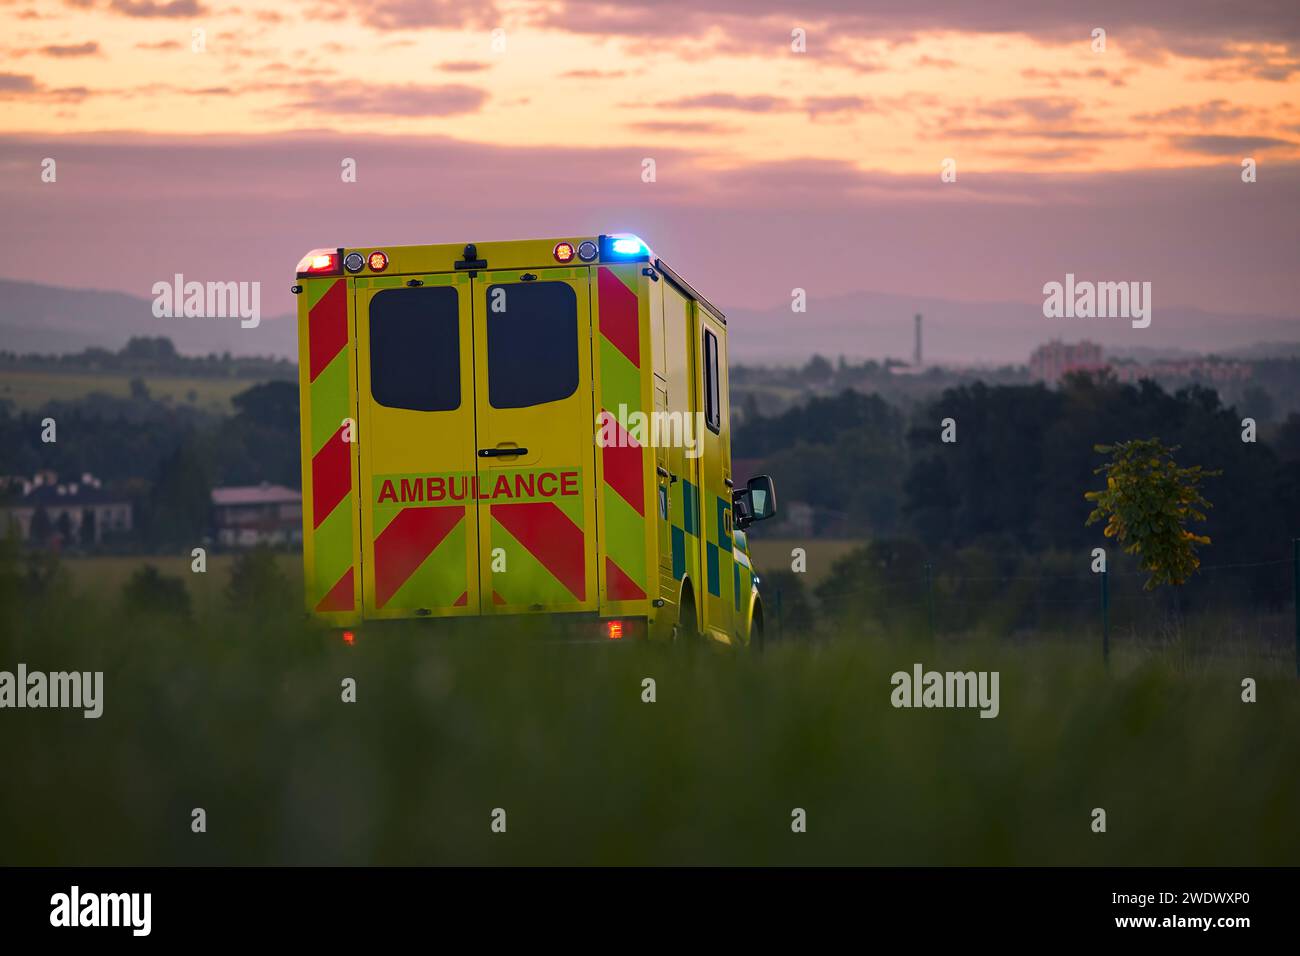 Auto di ambulanza gialla del servizio medico di emergenza sulla strada di campagna. Temi salvataggio, urgenza e assistenza sanitaria. Foto Stock